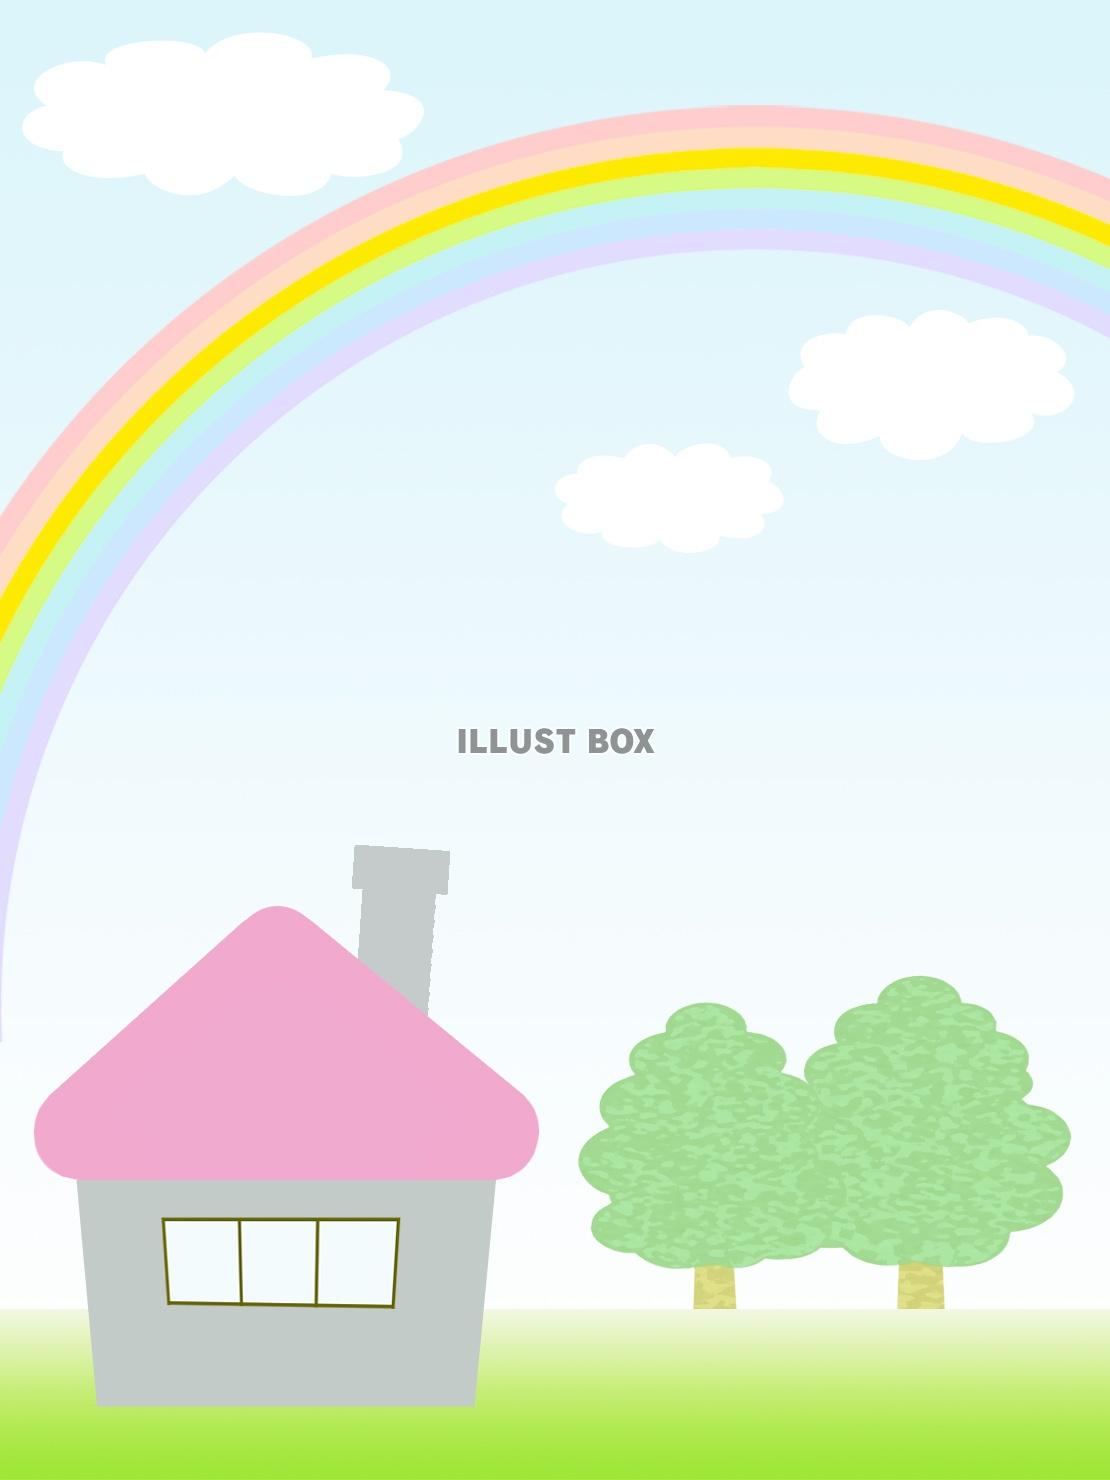 風景壁紙、虹と家と樹木の背景素材イラスト